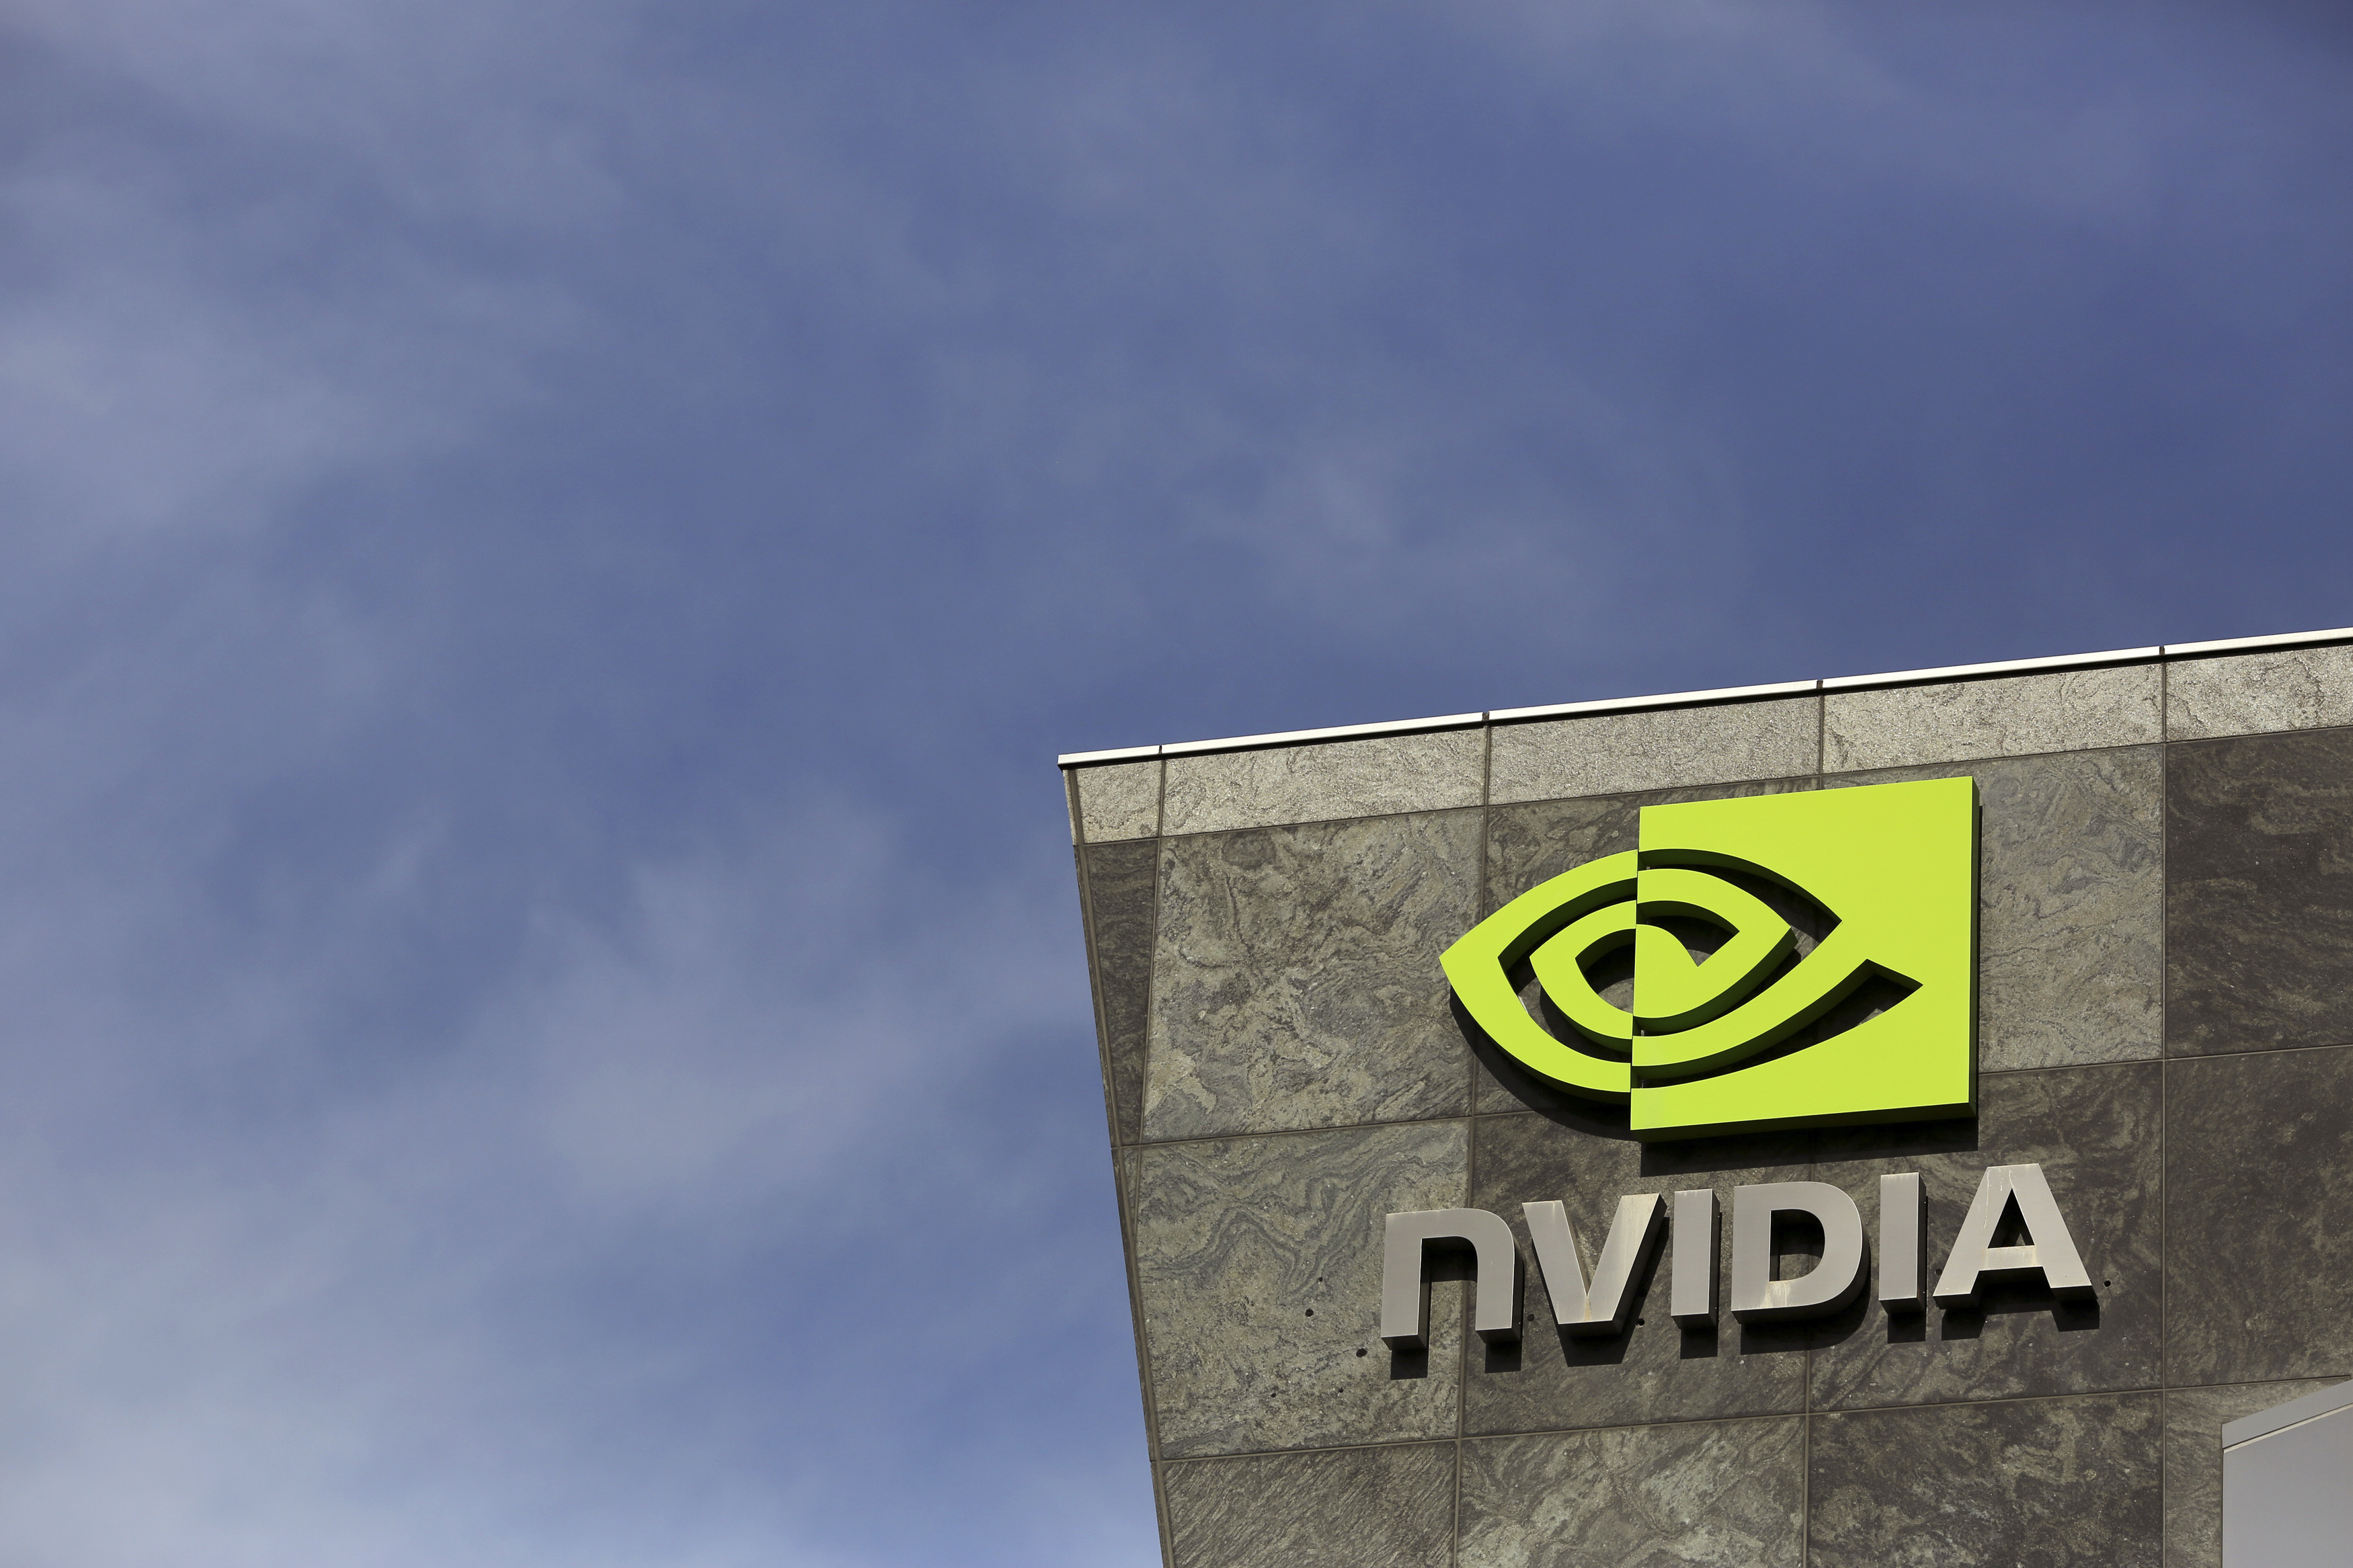 Technology company Nvidia's logo can be seen at its headquarters in Santa Clara.